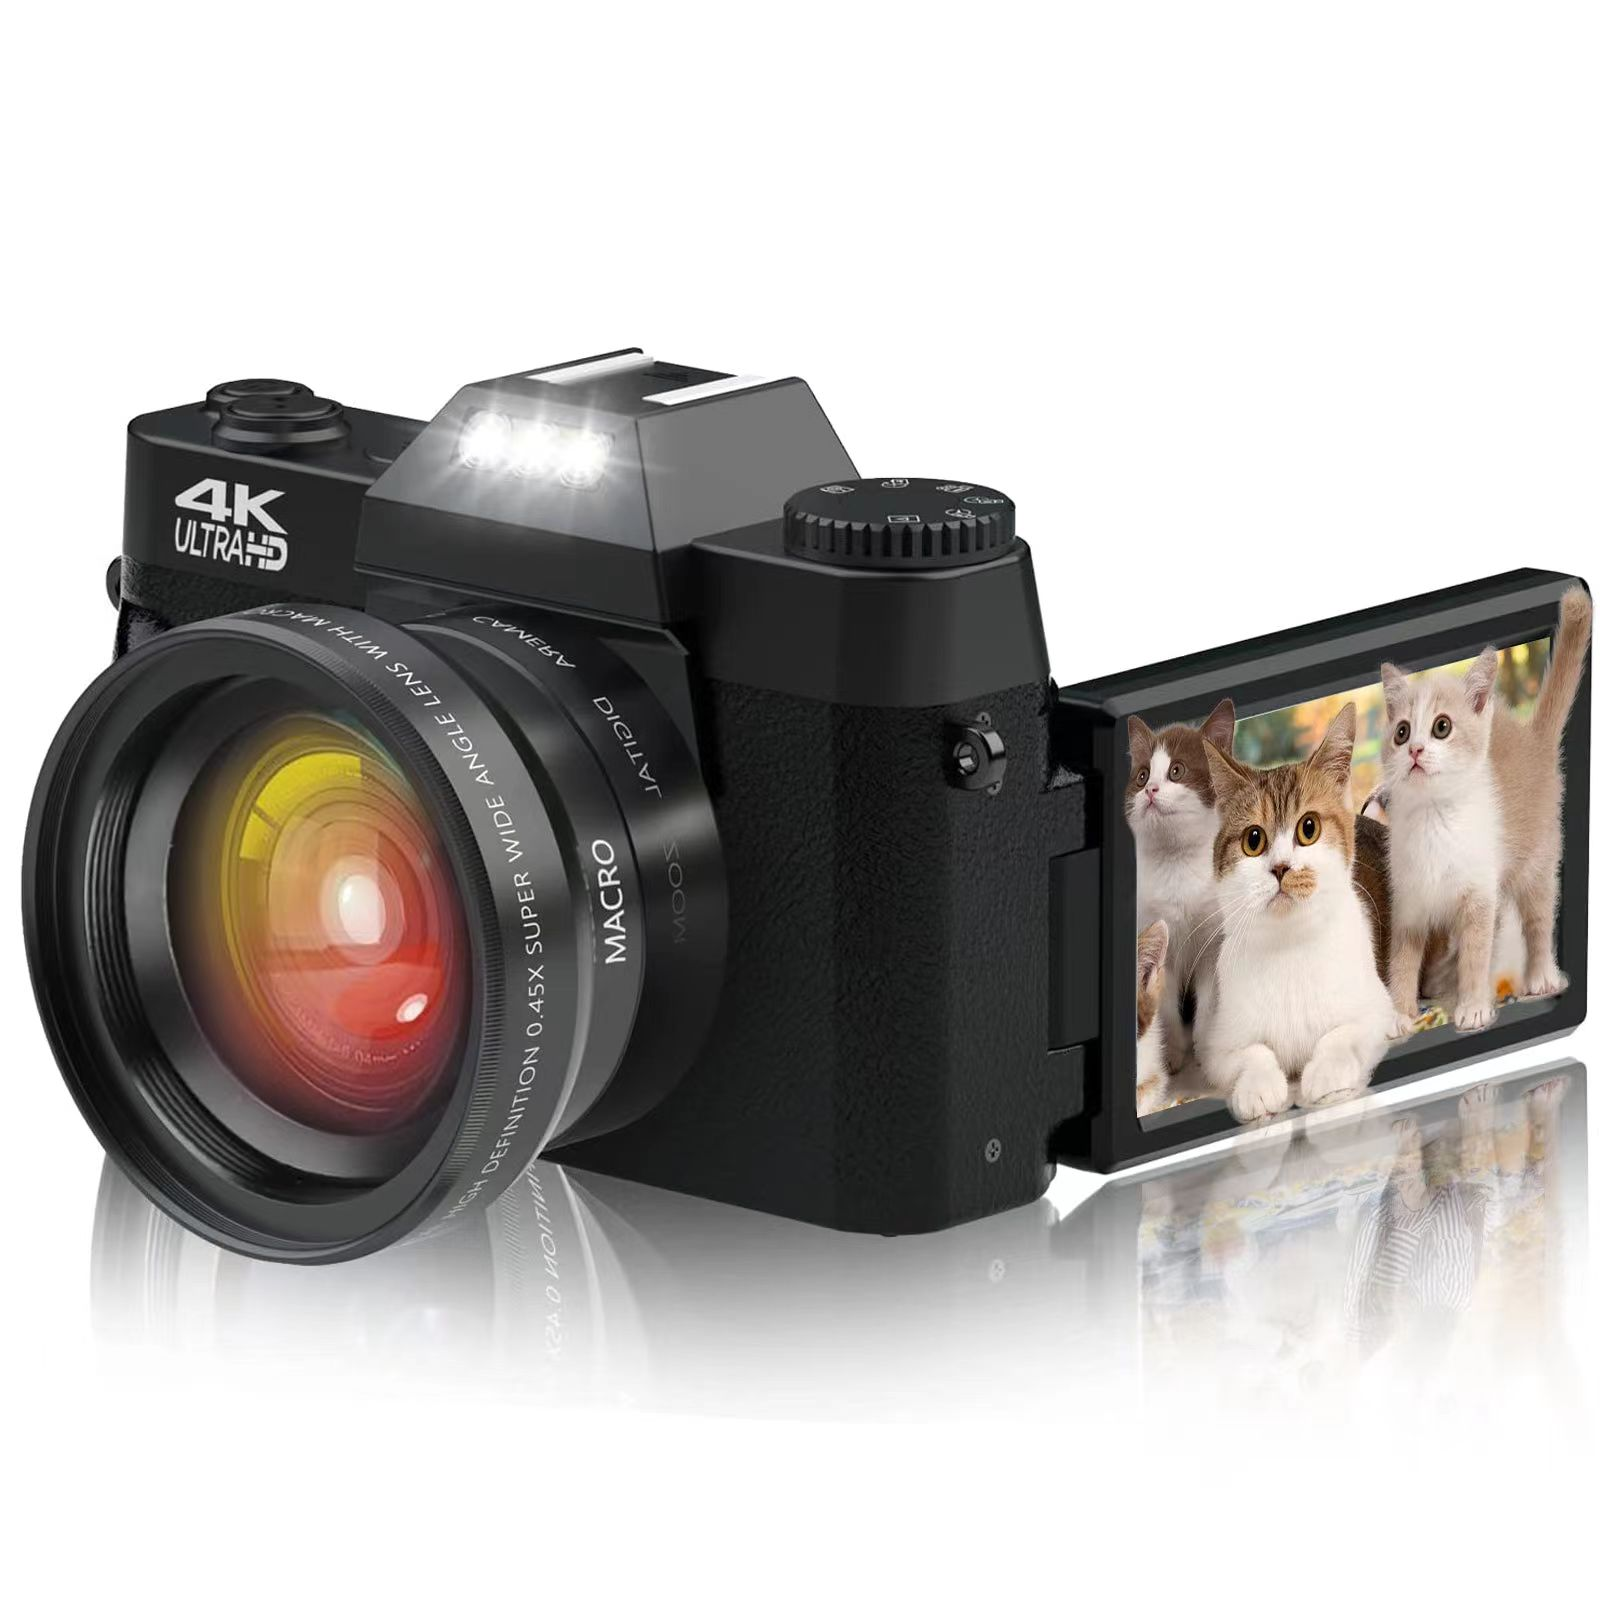 64G 48 LIFE Digital Speicherkarte, MP der Kompaktkamera PRO Digitalkamera Schwarz Einstiegsklasse mit kamera FINE